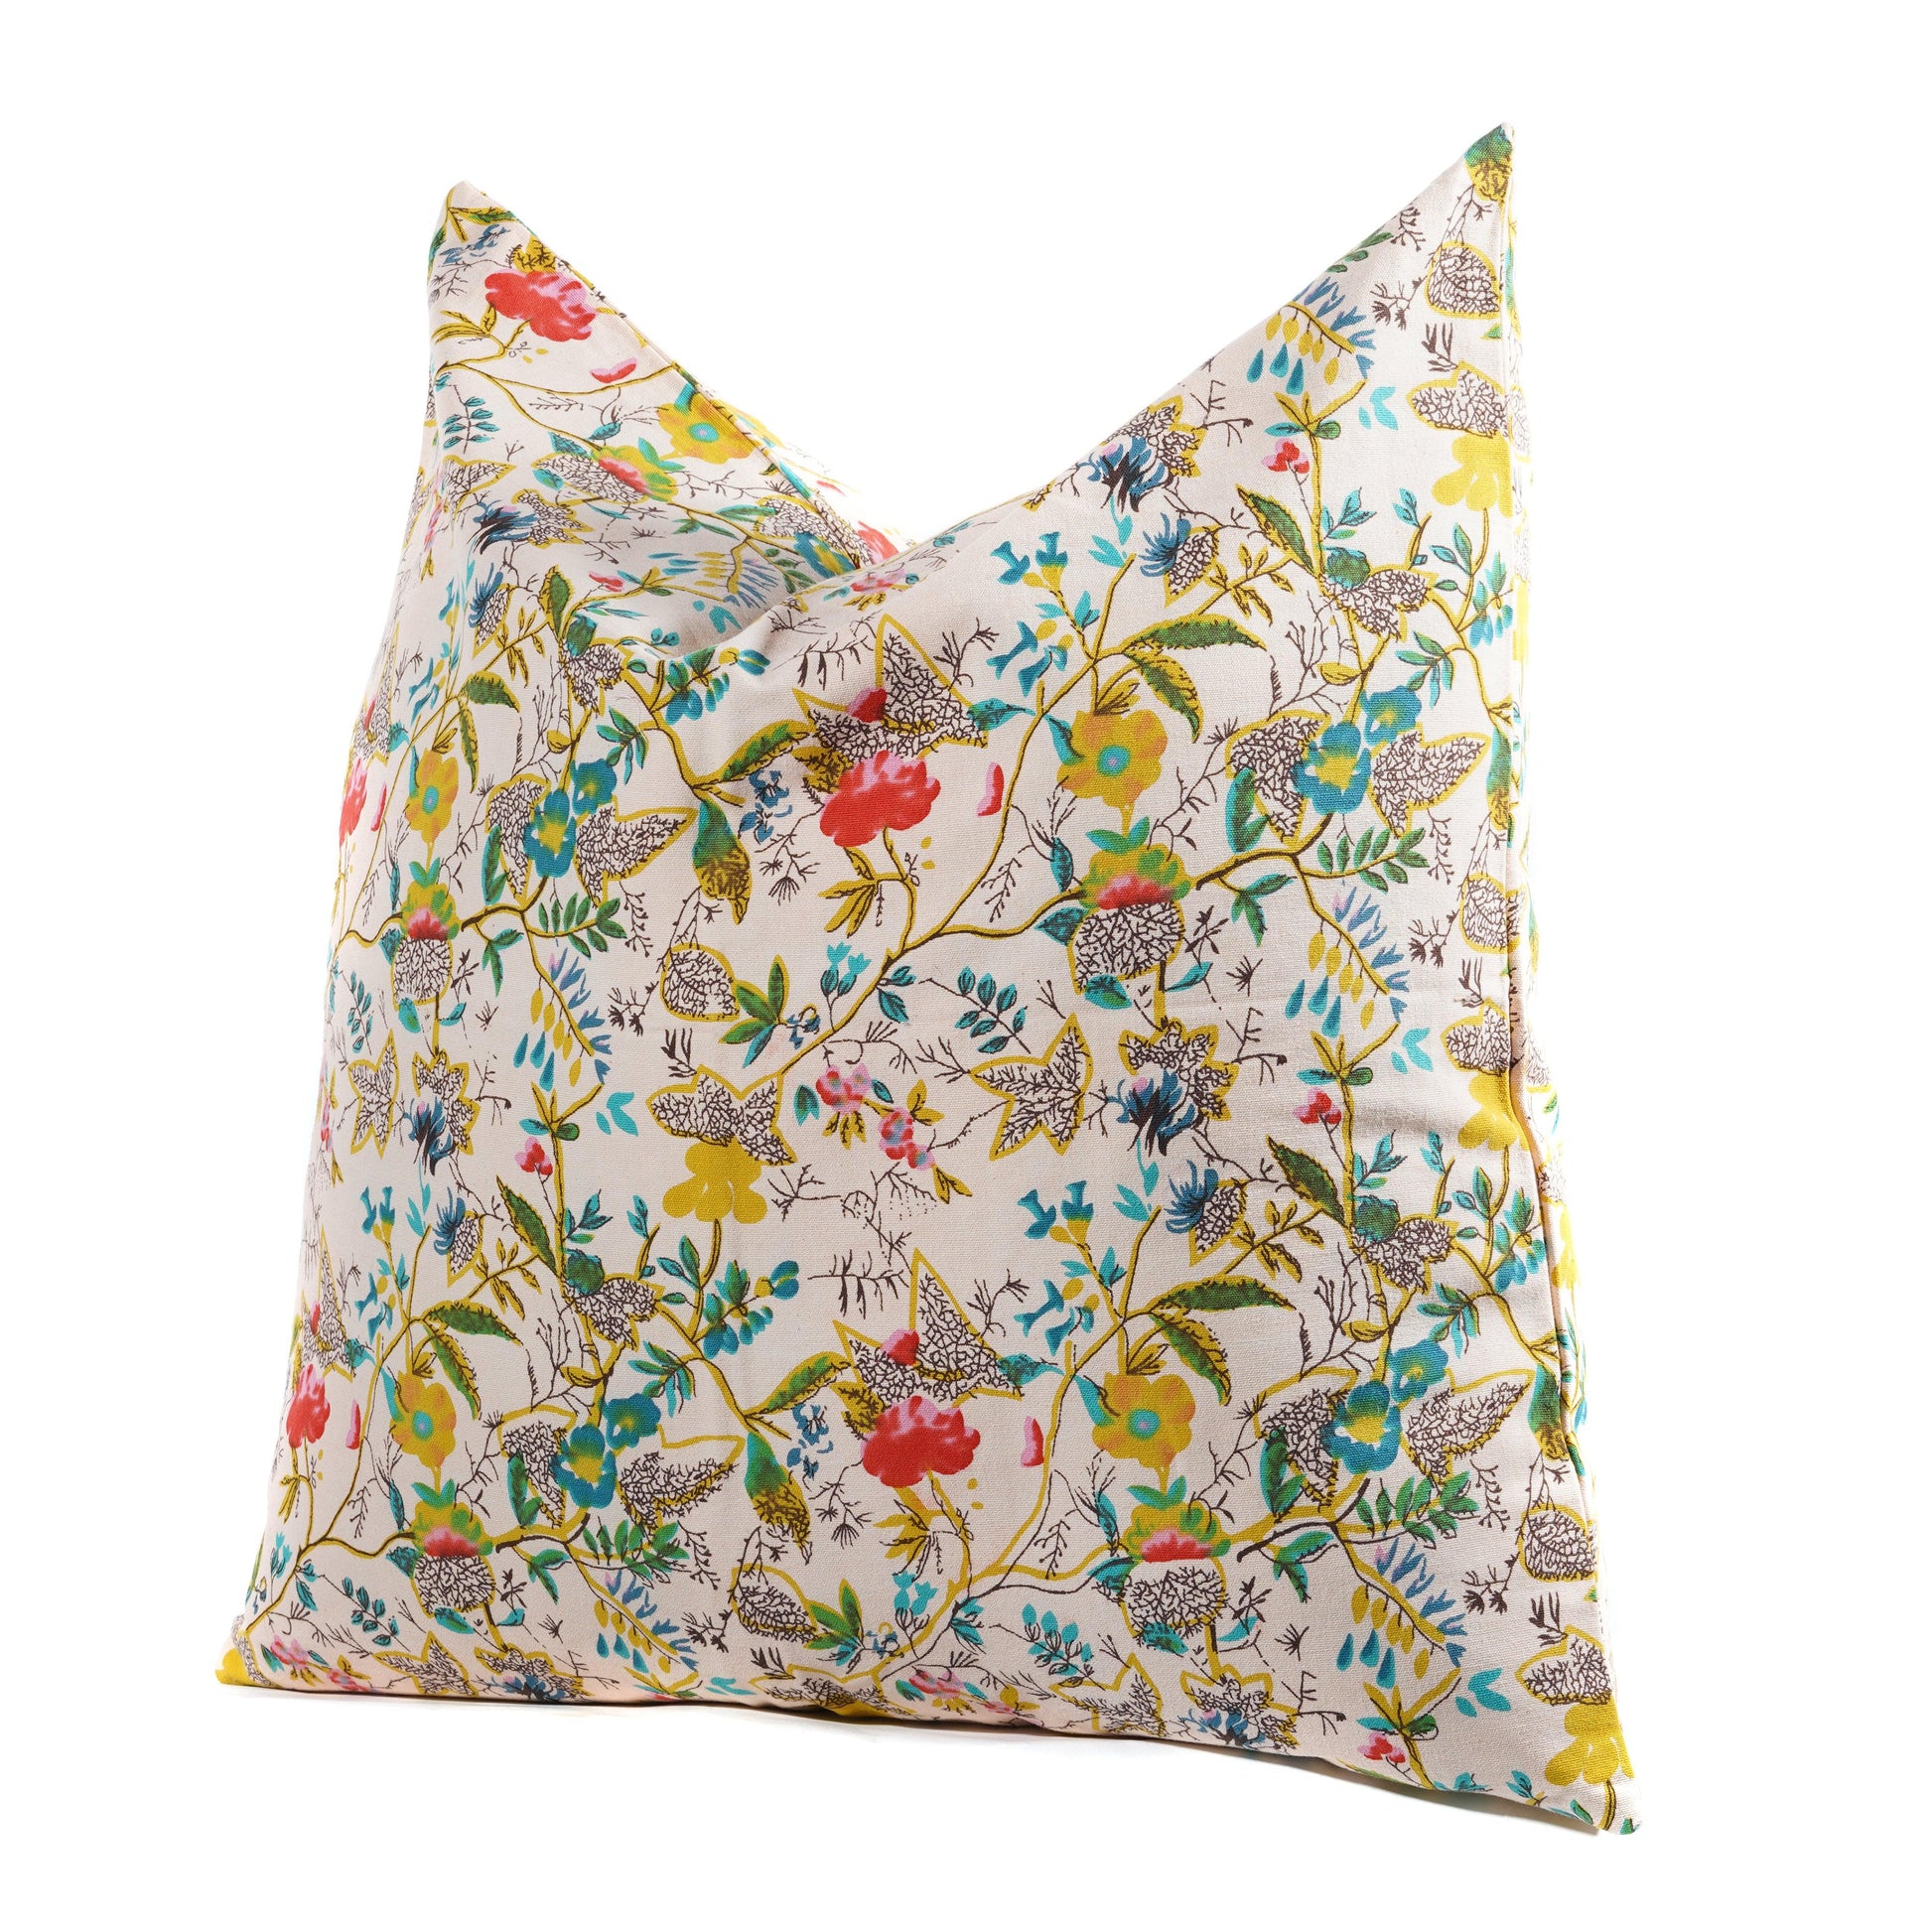 Floral cotton cushion cover both side print- Peach - The Teal Thread